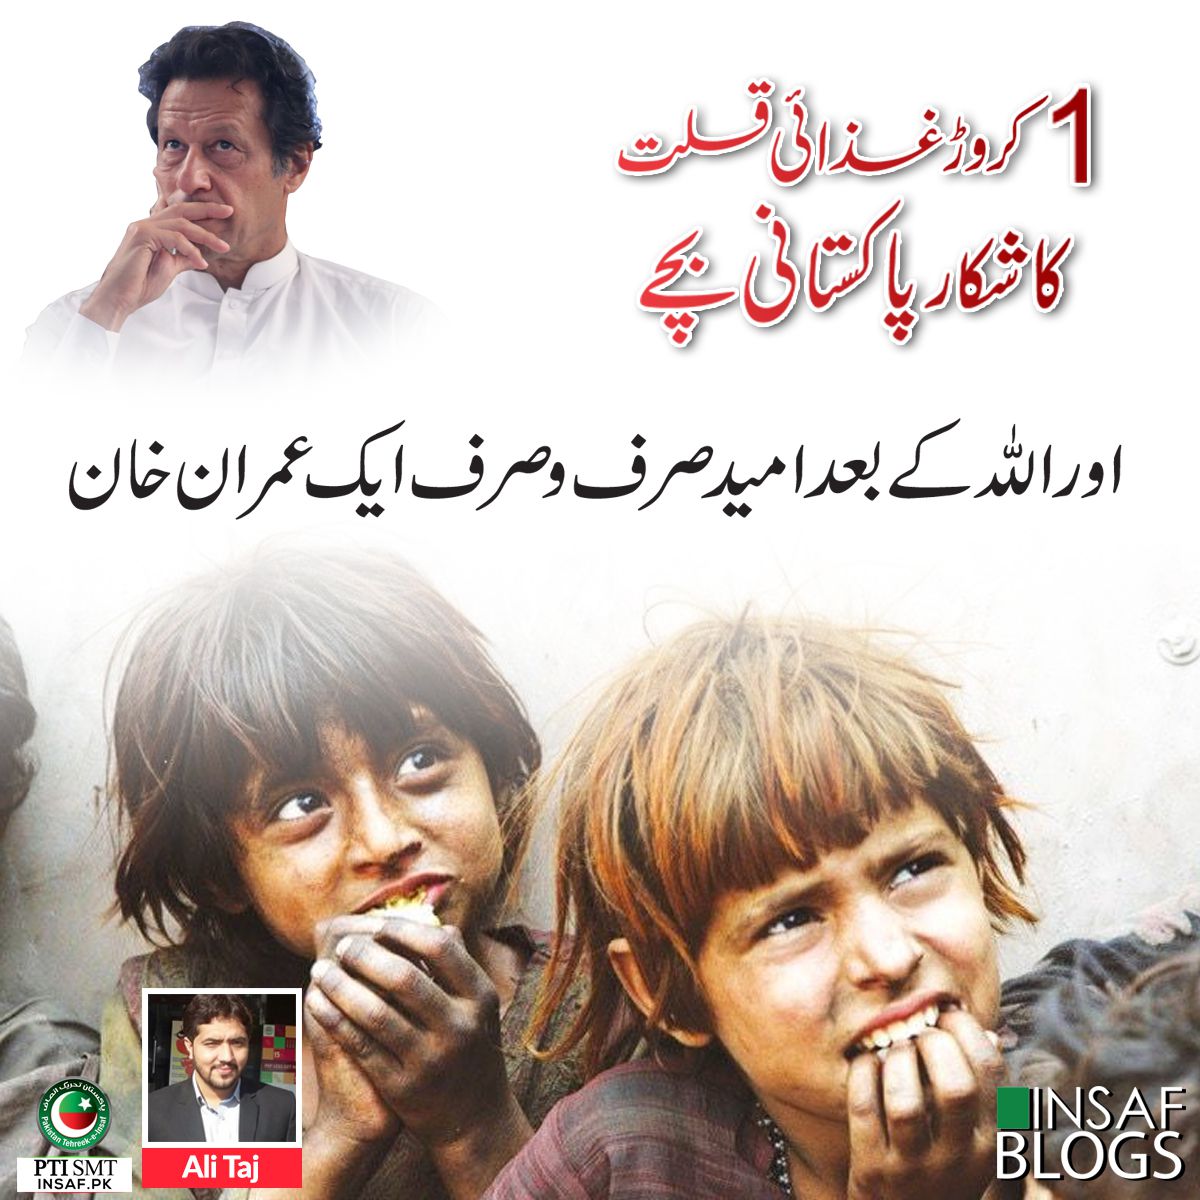 insaf-blog-ali-taj-food-shortage-children-pakistan